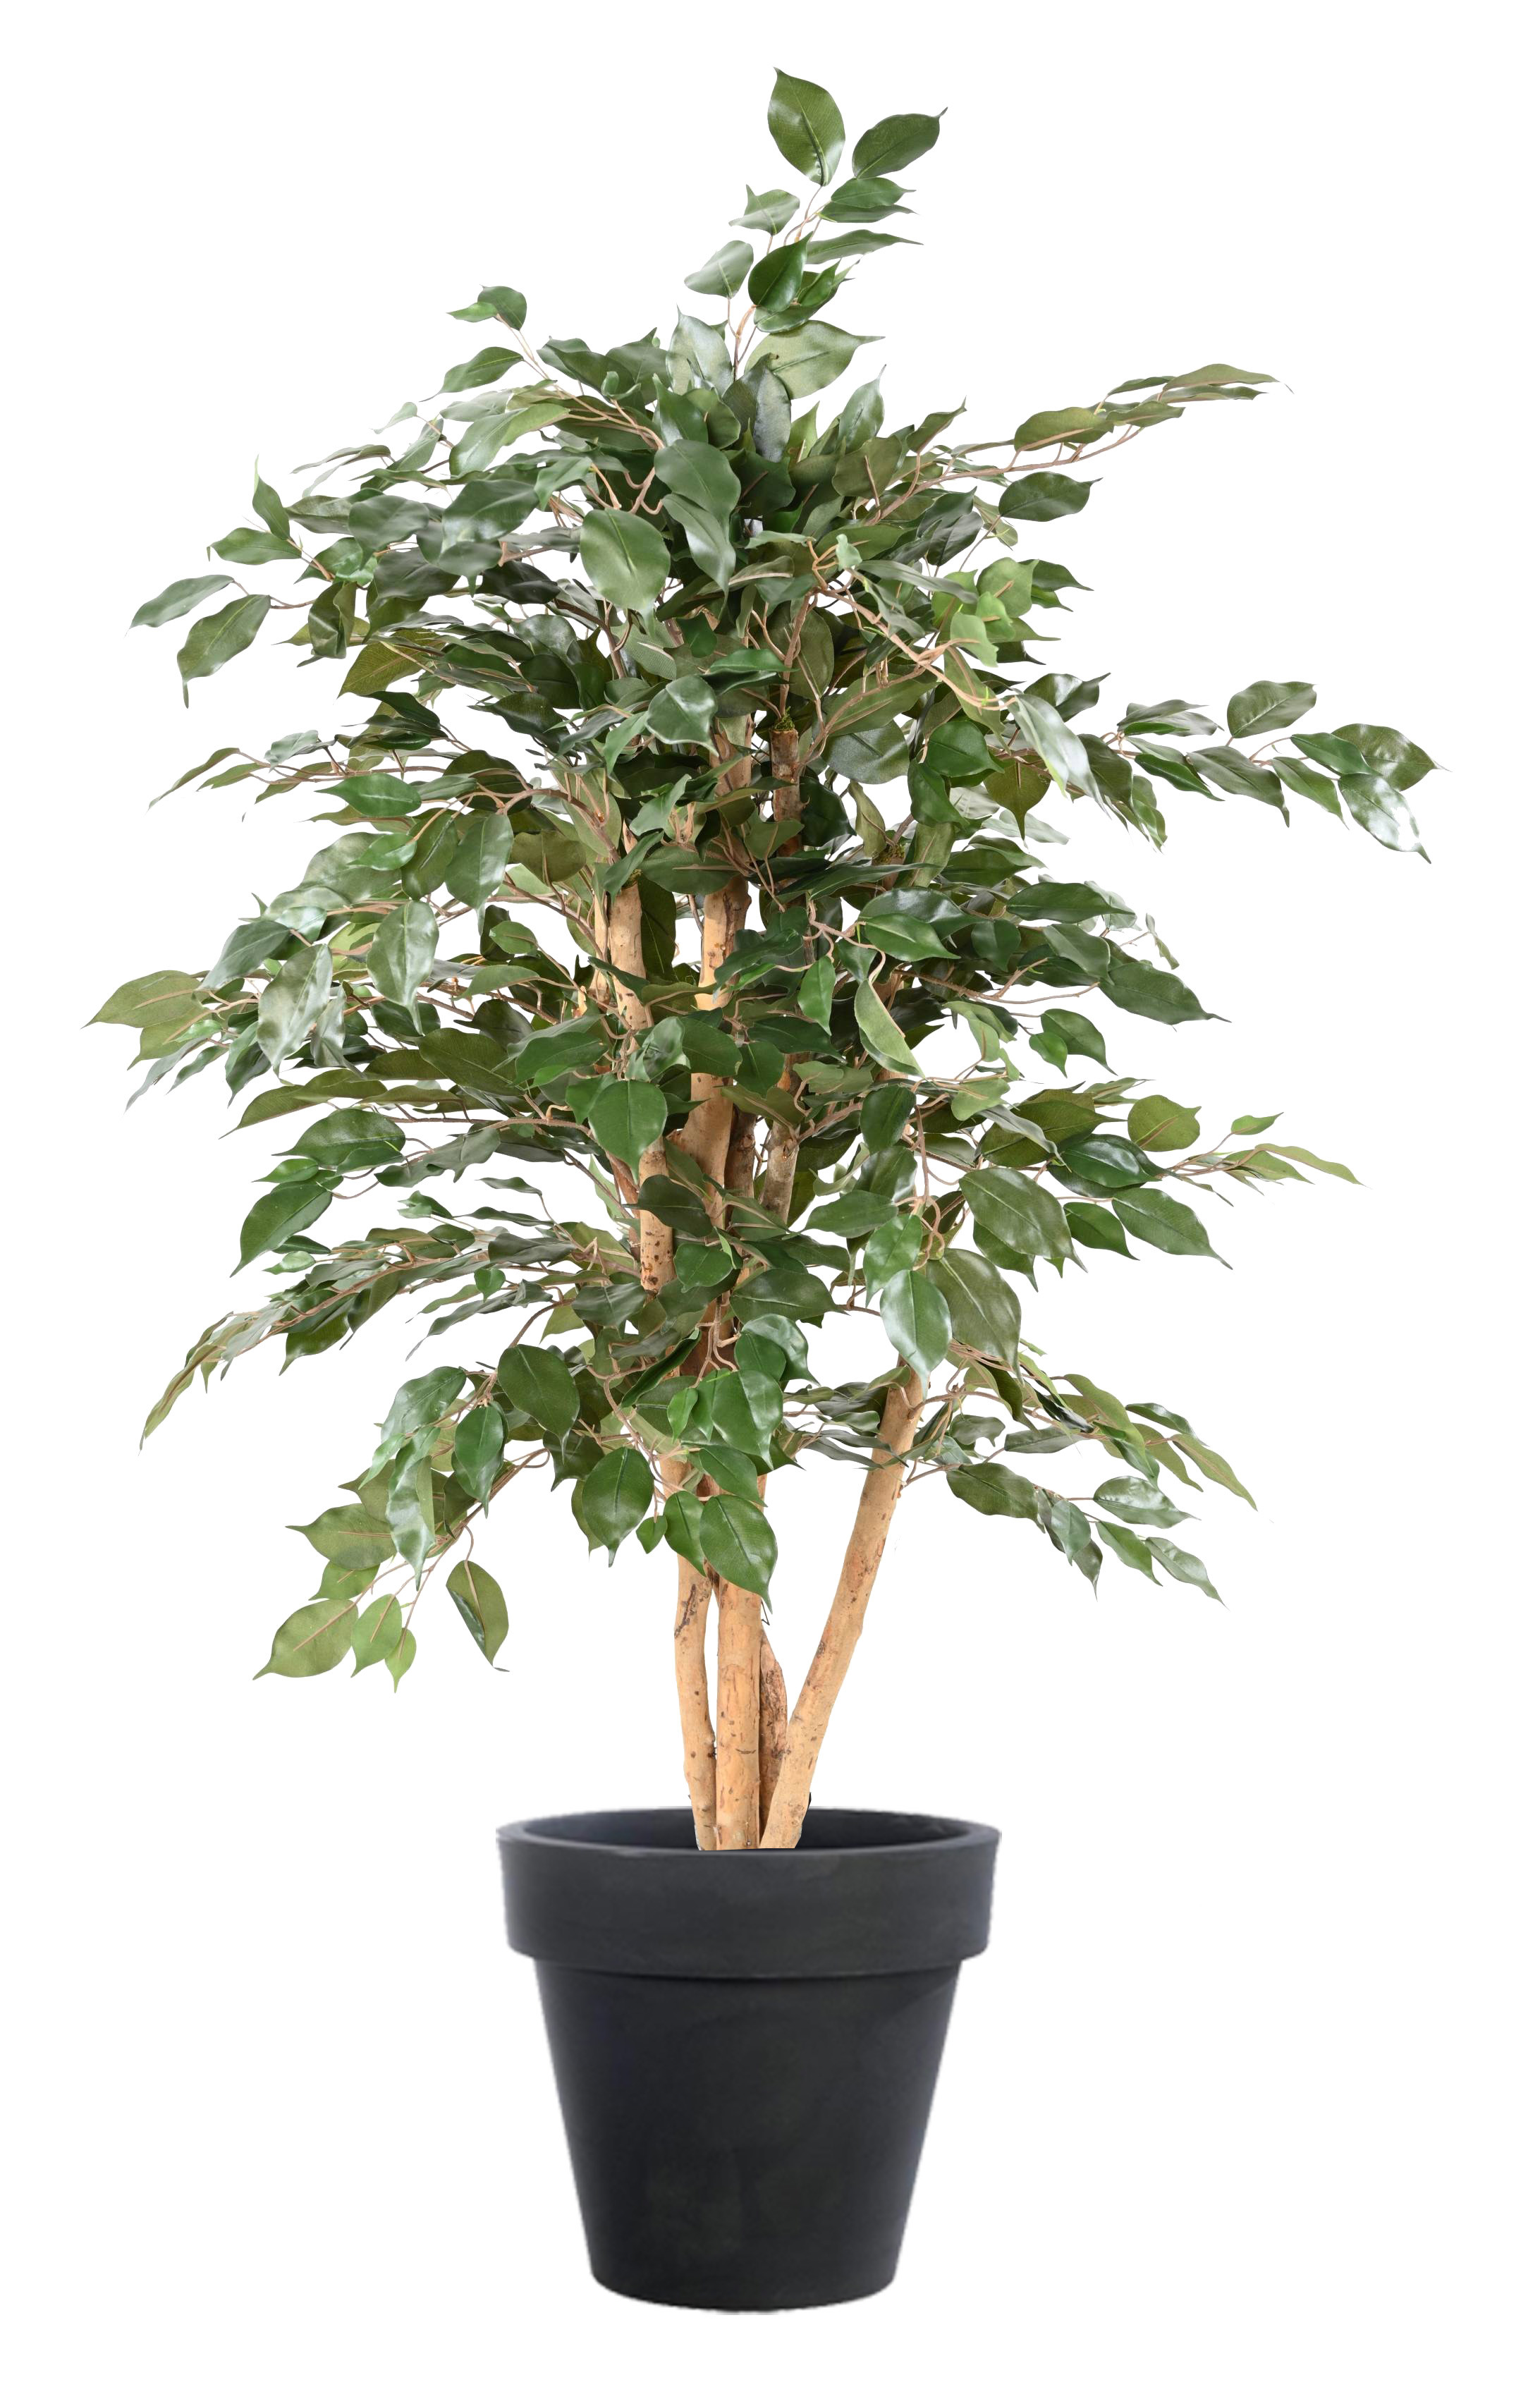 Plante Artificielle 1m50 Ficus